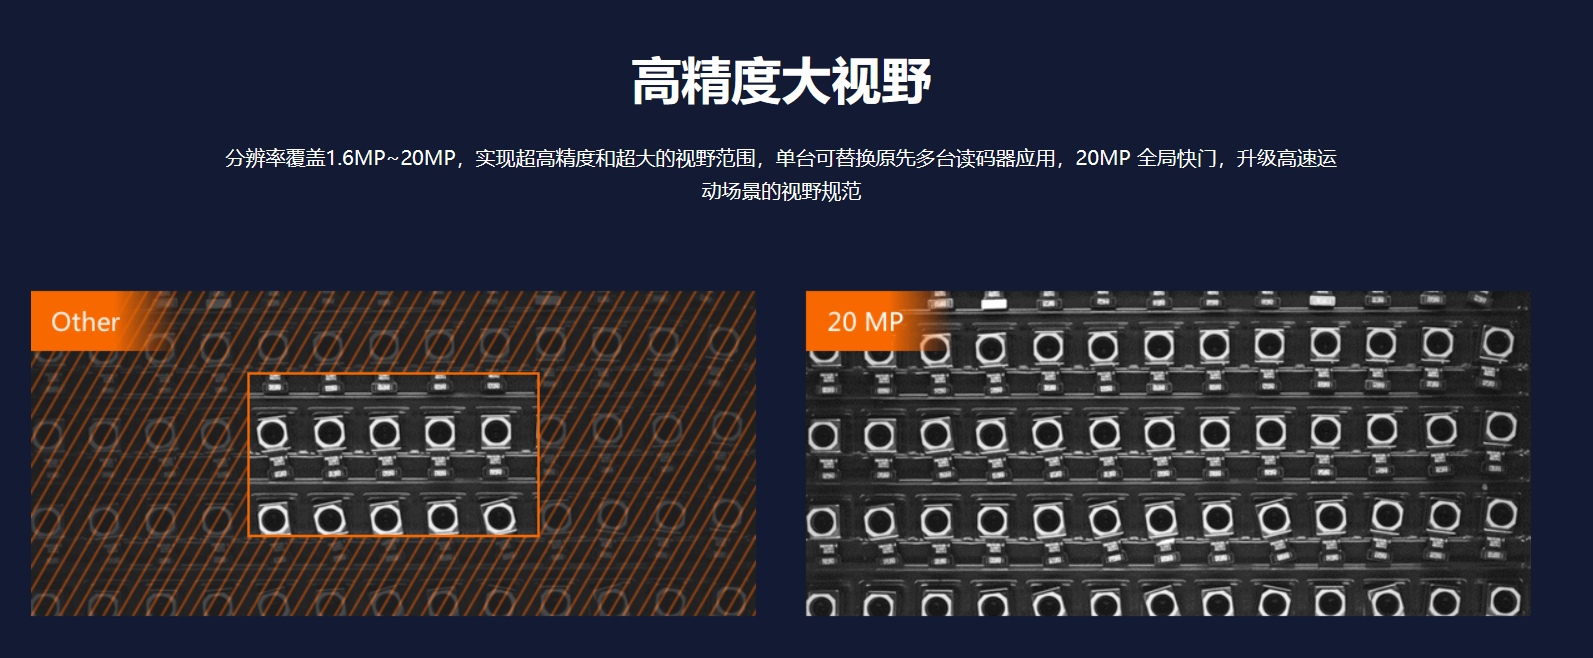 智能读码丨海康ID5000系列 MV-ID5060M 600 万像素全功能型工业读码器-捷利得(北京)自动化科技有限公司